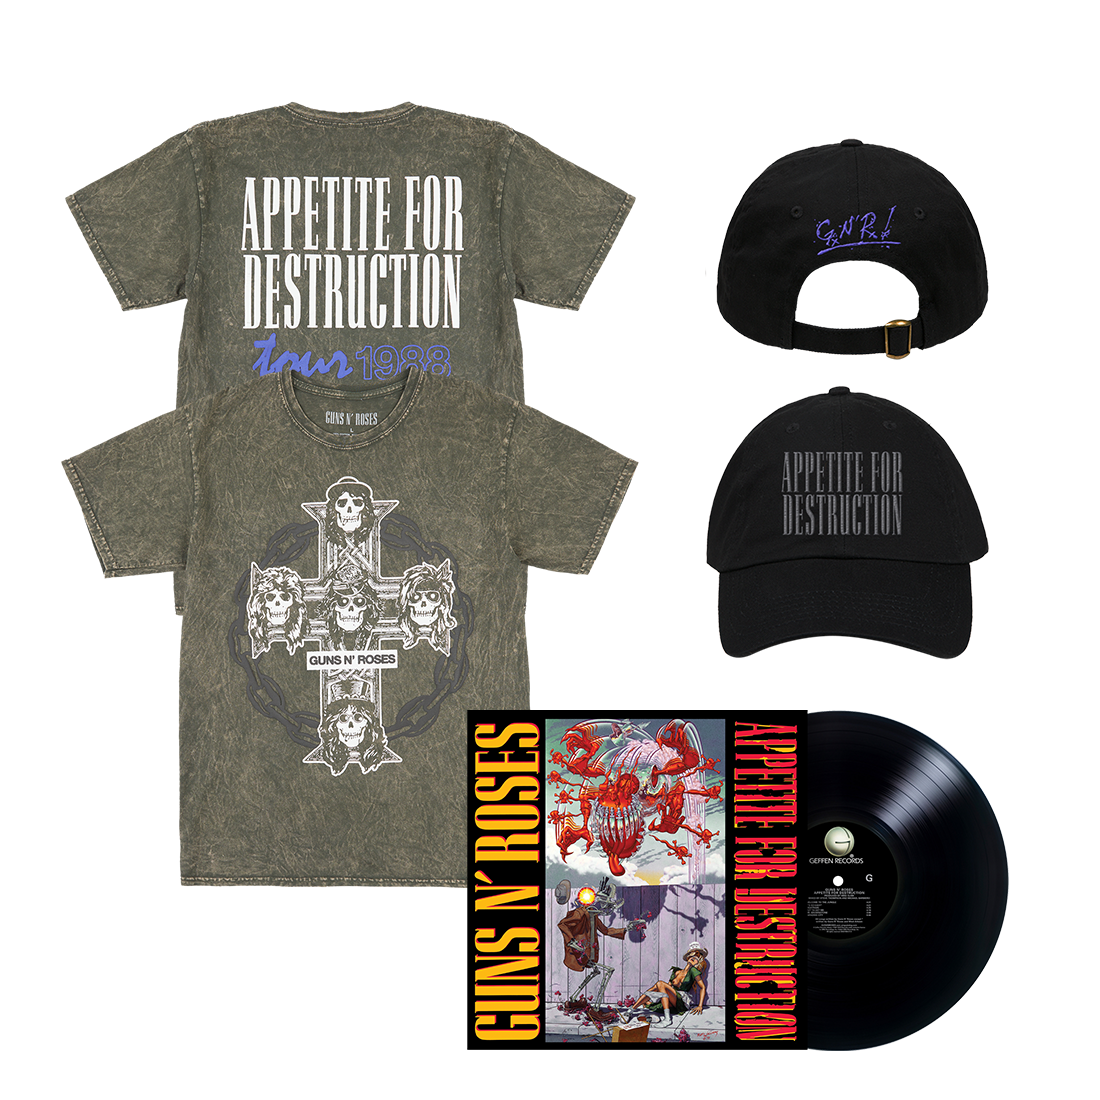 Appetite For Destruction Limited Edition LP + Appetite For Destruction Cross and Chain T-Shirt + Appetite For Destruction Hat